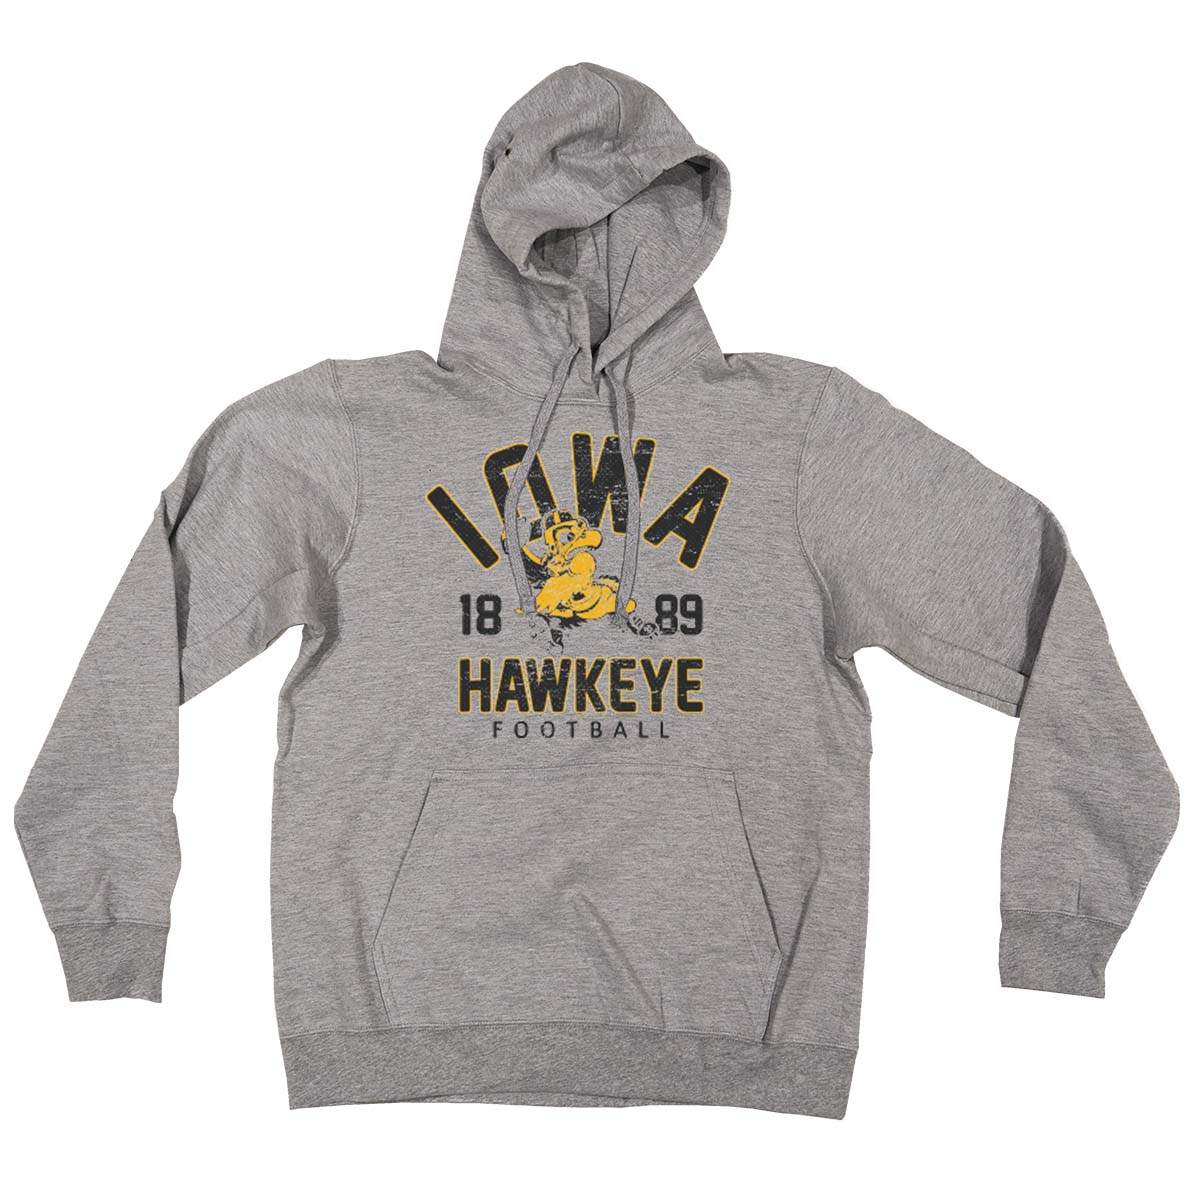 Iowa Hawkeye Football Vintage Herky Distressed Print Hooded Sweatshirt ...